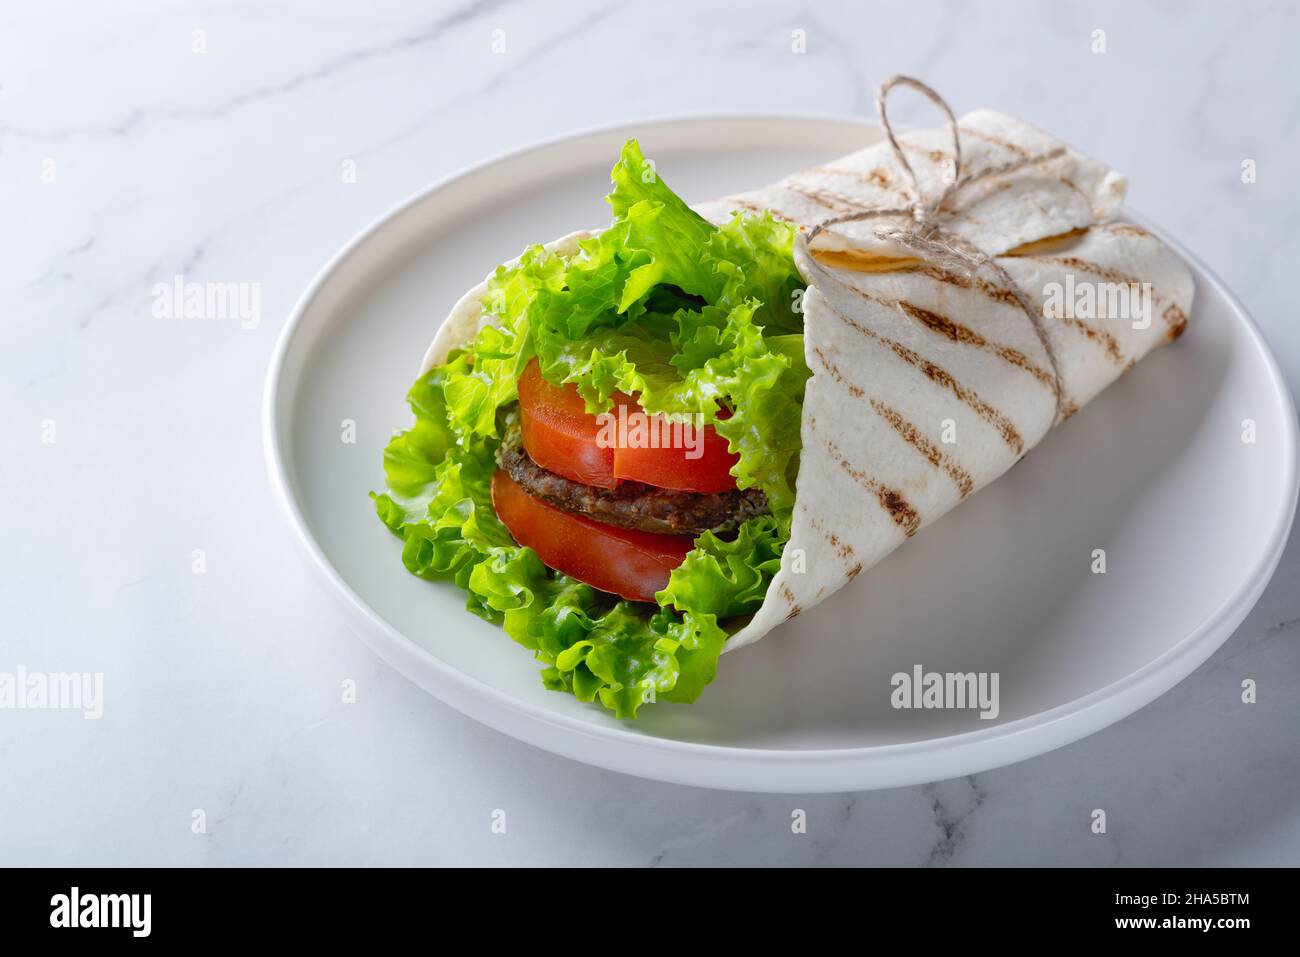 Sandwich mit Fleischsteak, Tomaten und Grünpflanzen auf Weiß einwickeln Stockfoto